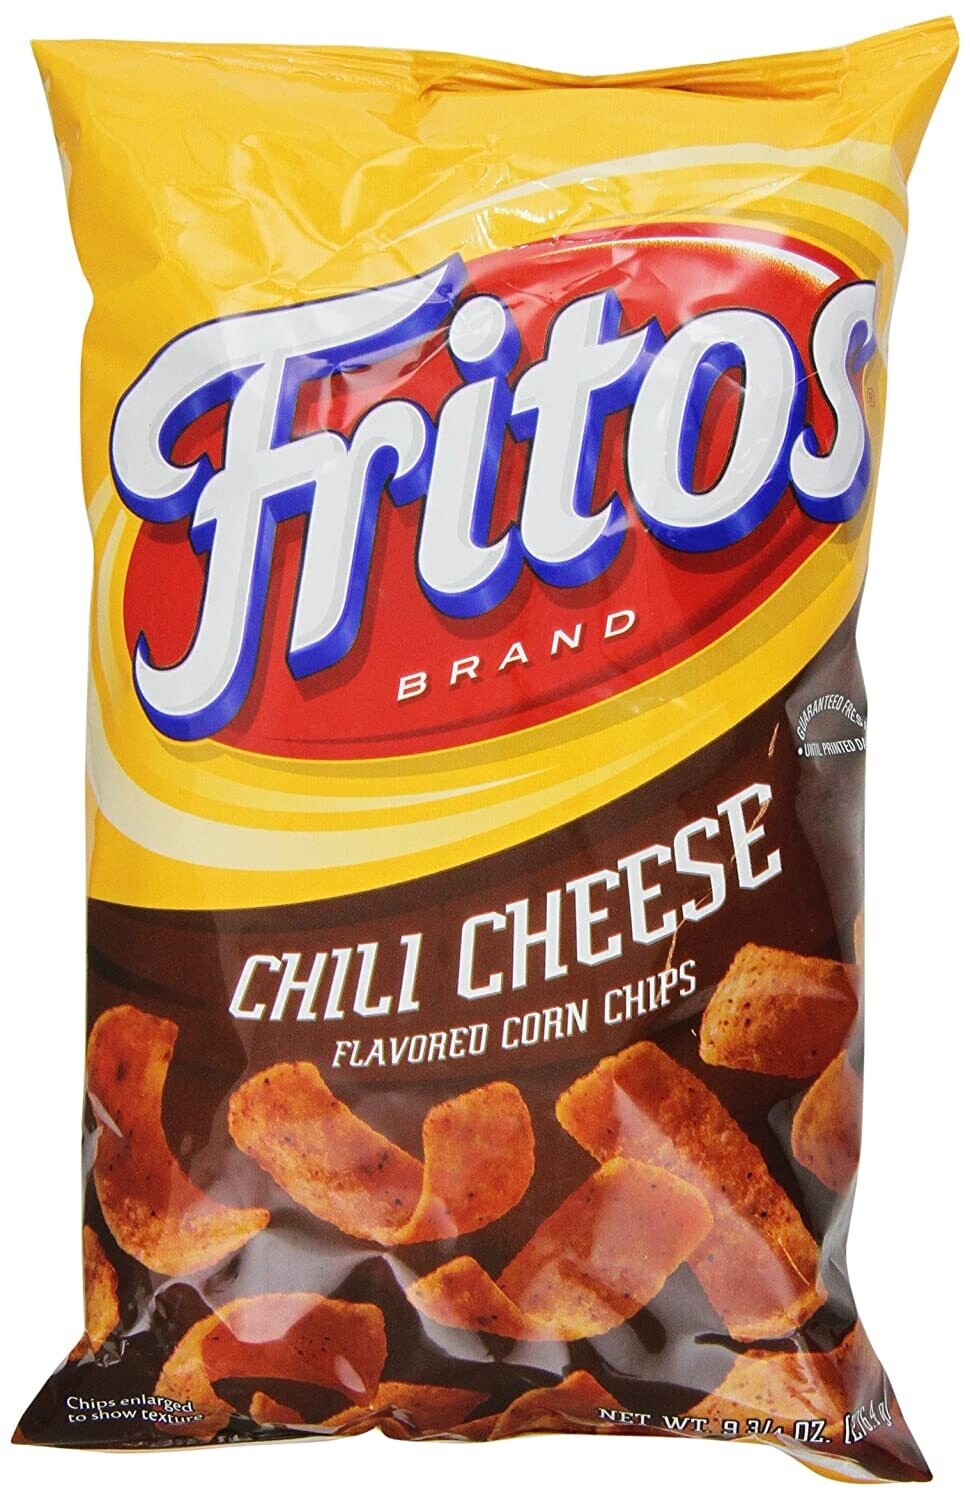 Chips / Big Bag / Fritos Chili Cheese, 9.25 oz